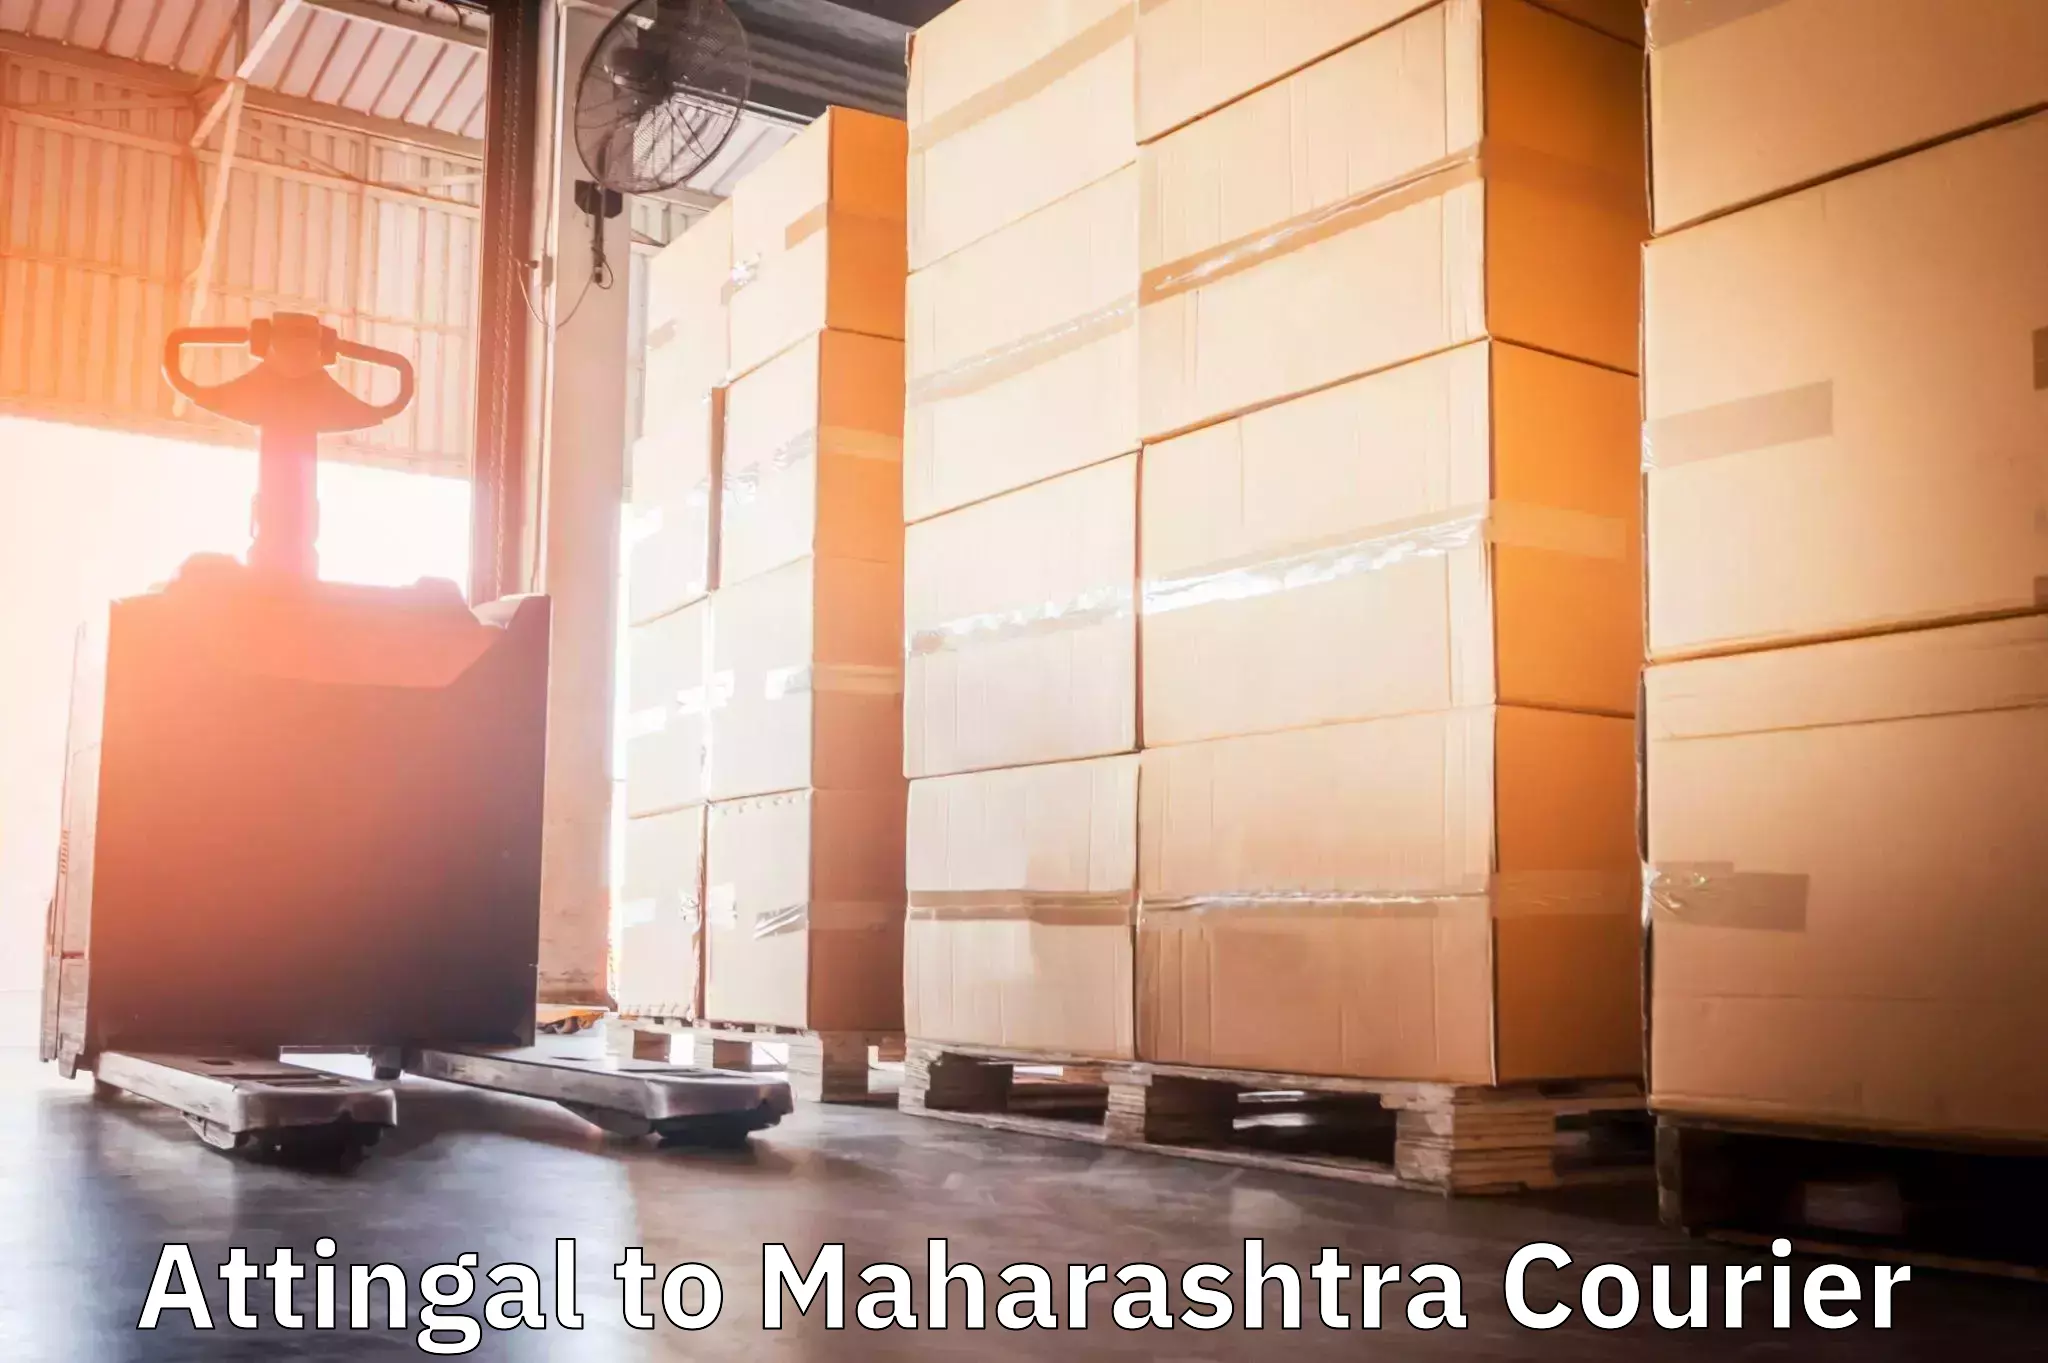 24-hour courier service Attingal to Maharashtra